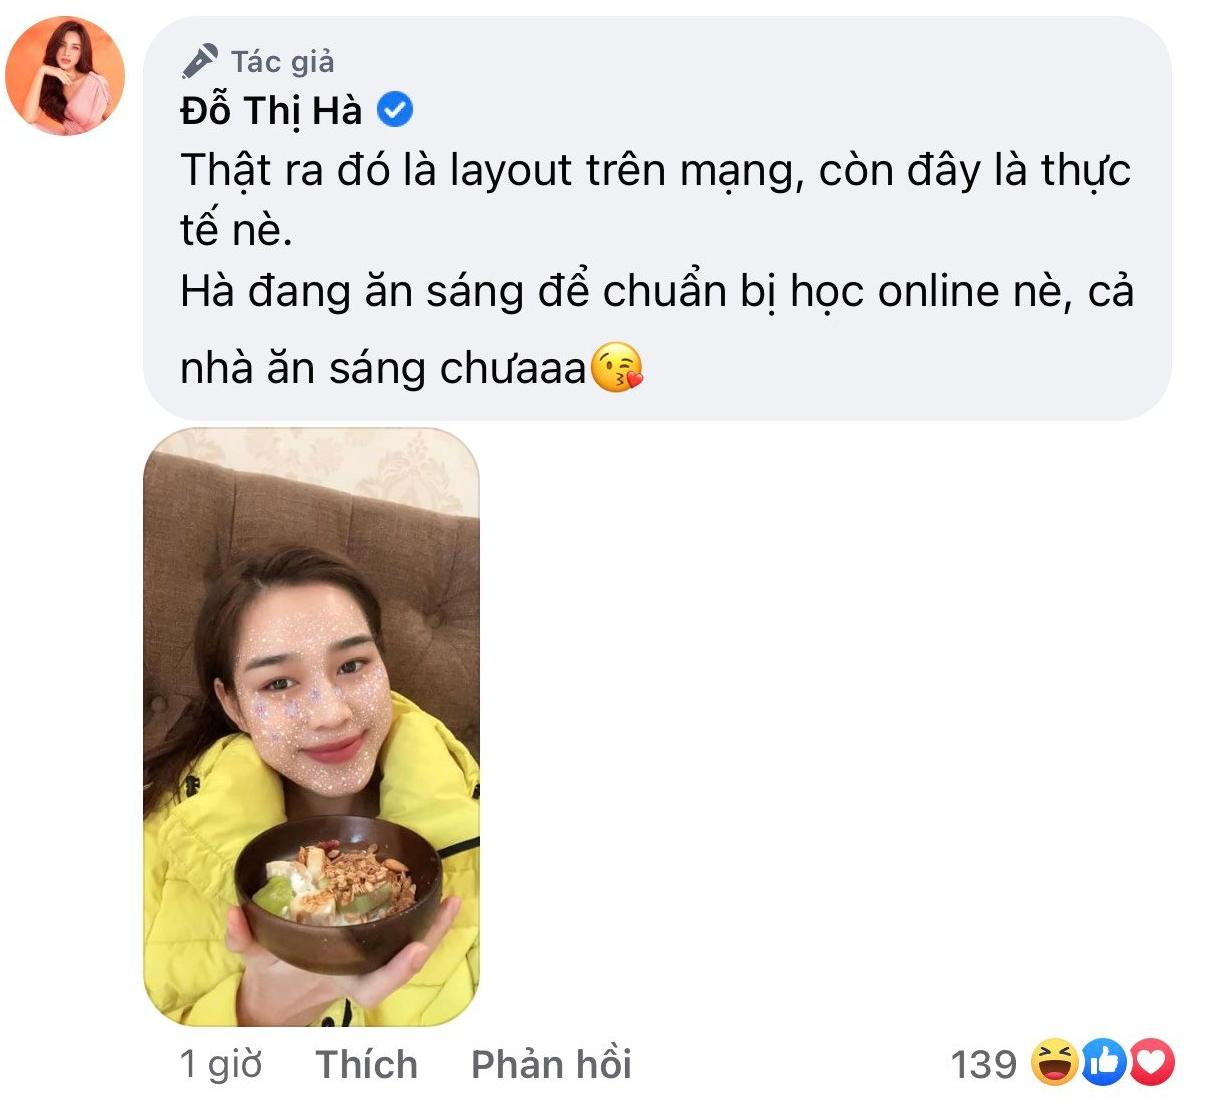 Bình luận bên dưới bài viết của Hoa hậu Đỗ Thị Hà nhưng vẫn khiến dân tình không khỏi xuýt xoa